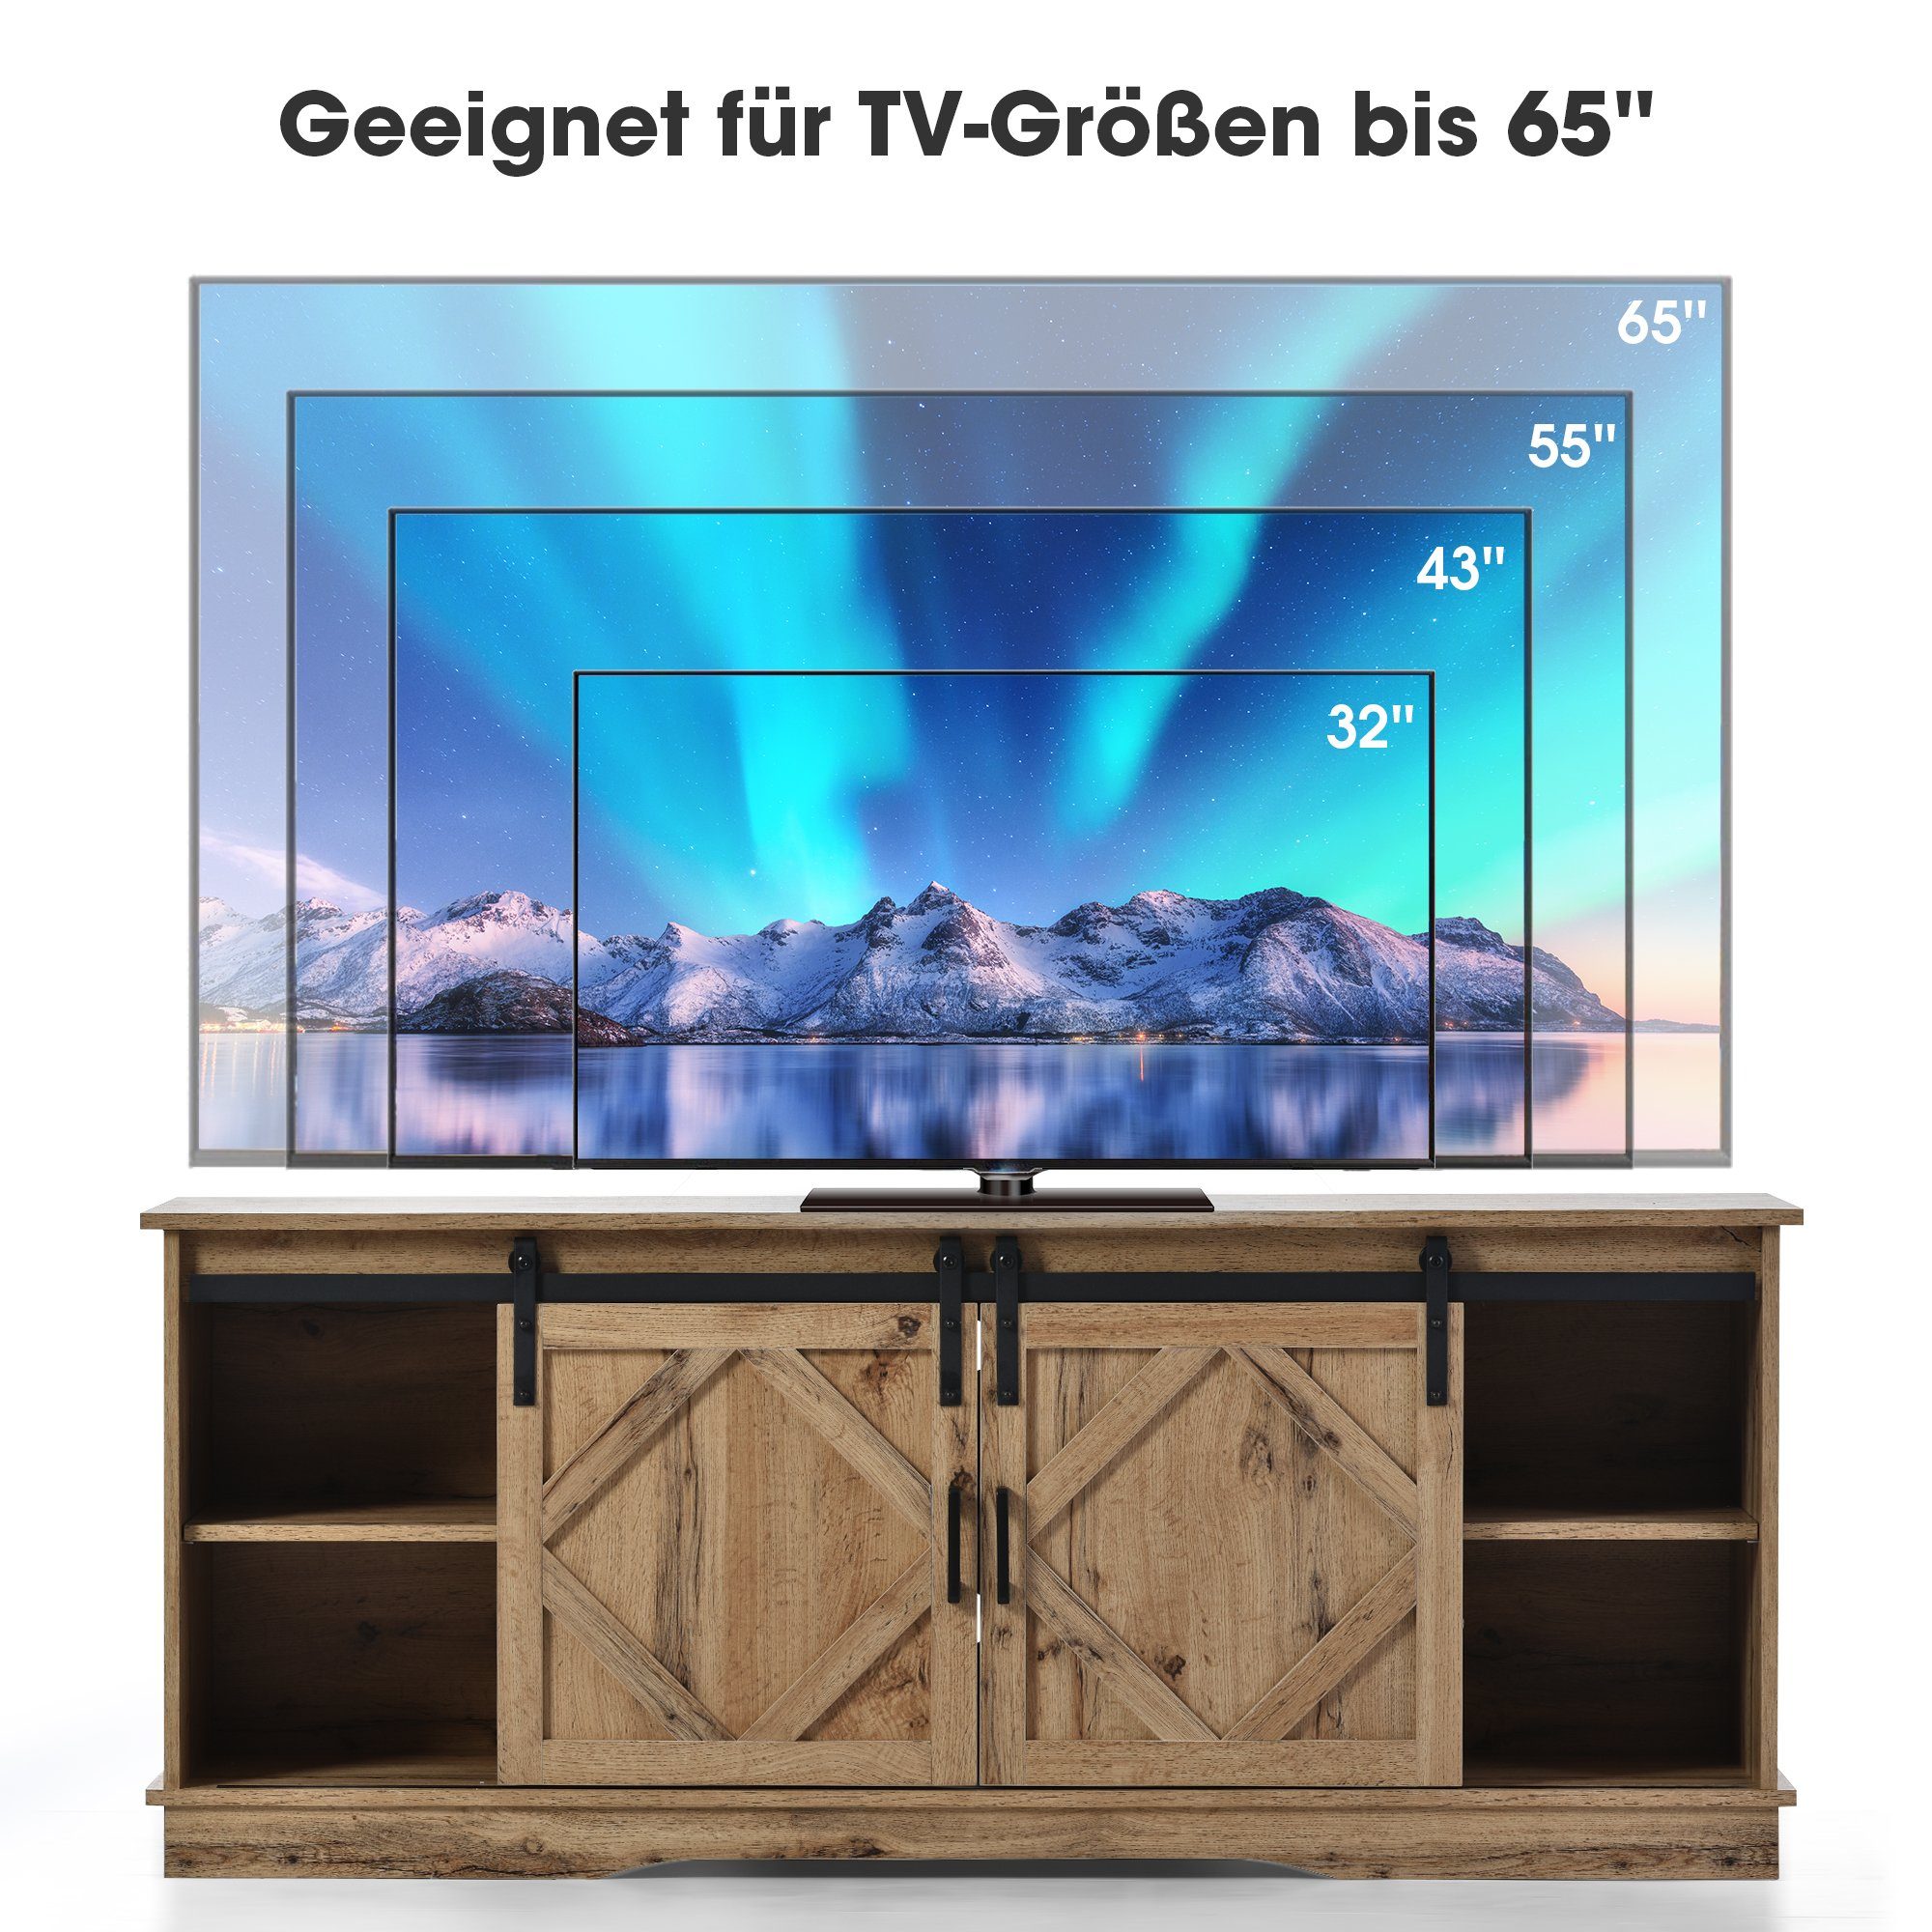 2 weiβ/braun einstellbare Odikalo TV Stand Regale Schiebetüren, Sideboard TV-Schrank mit